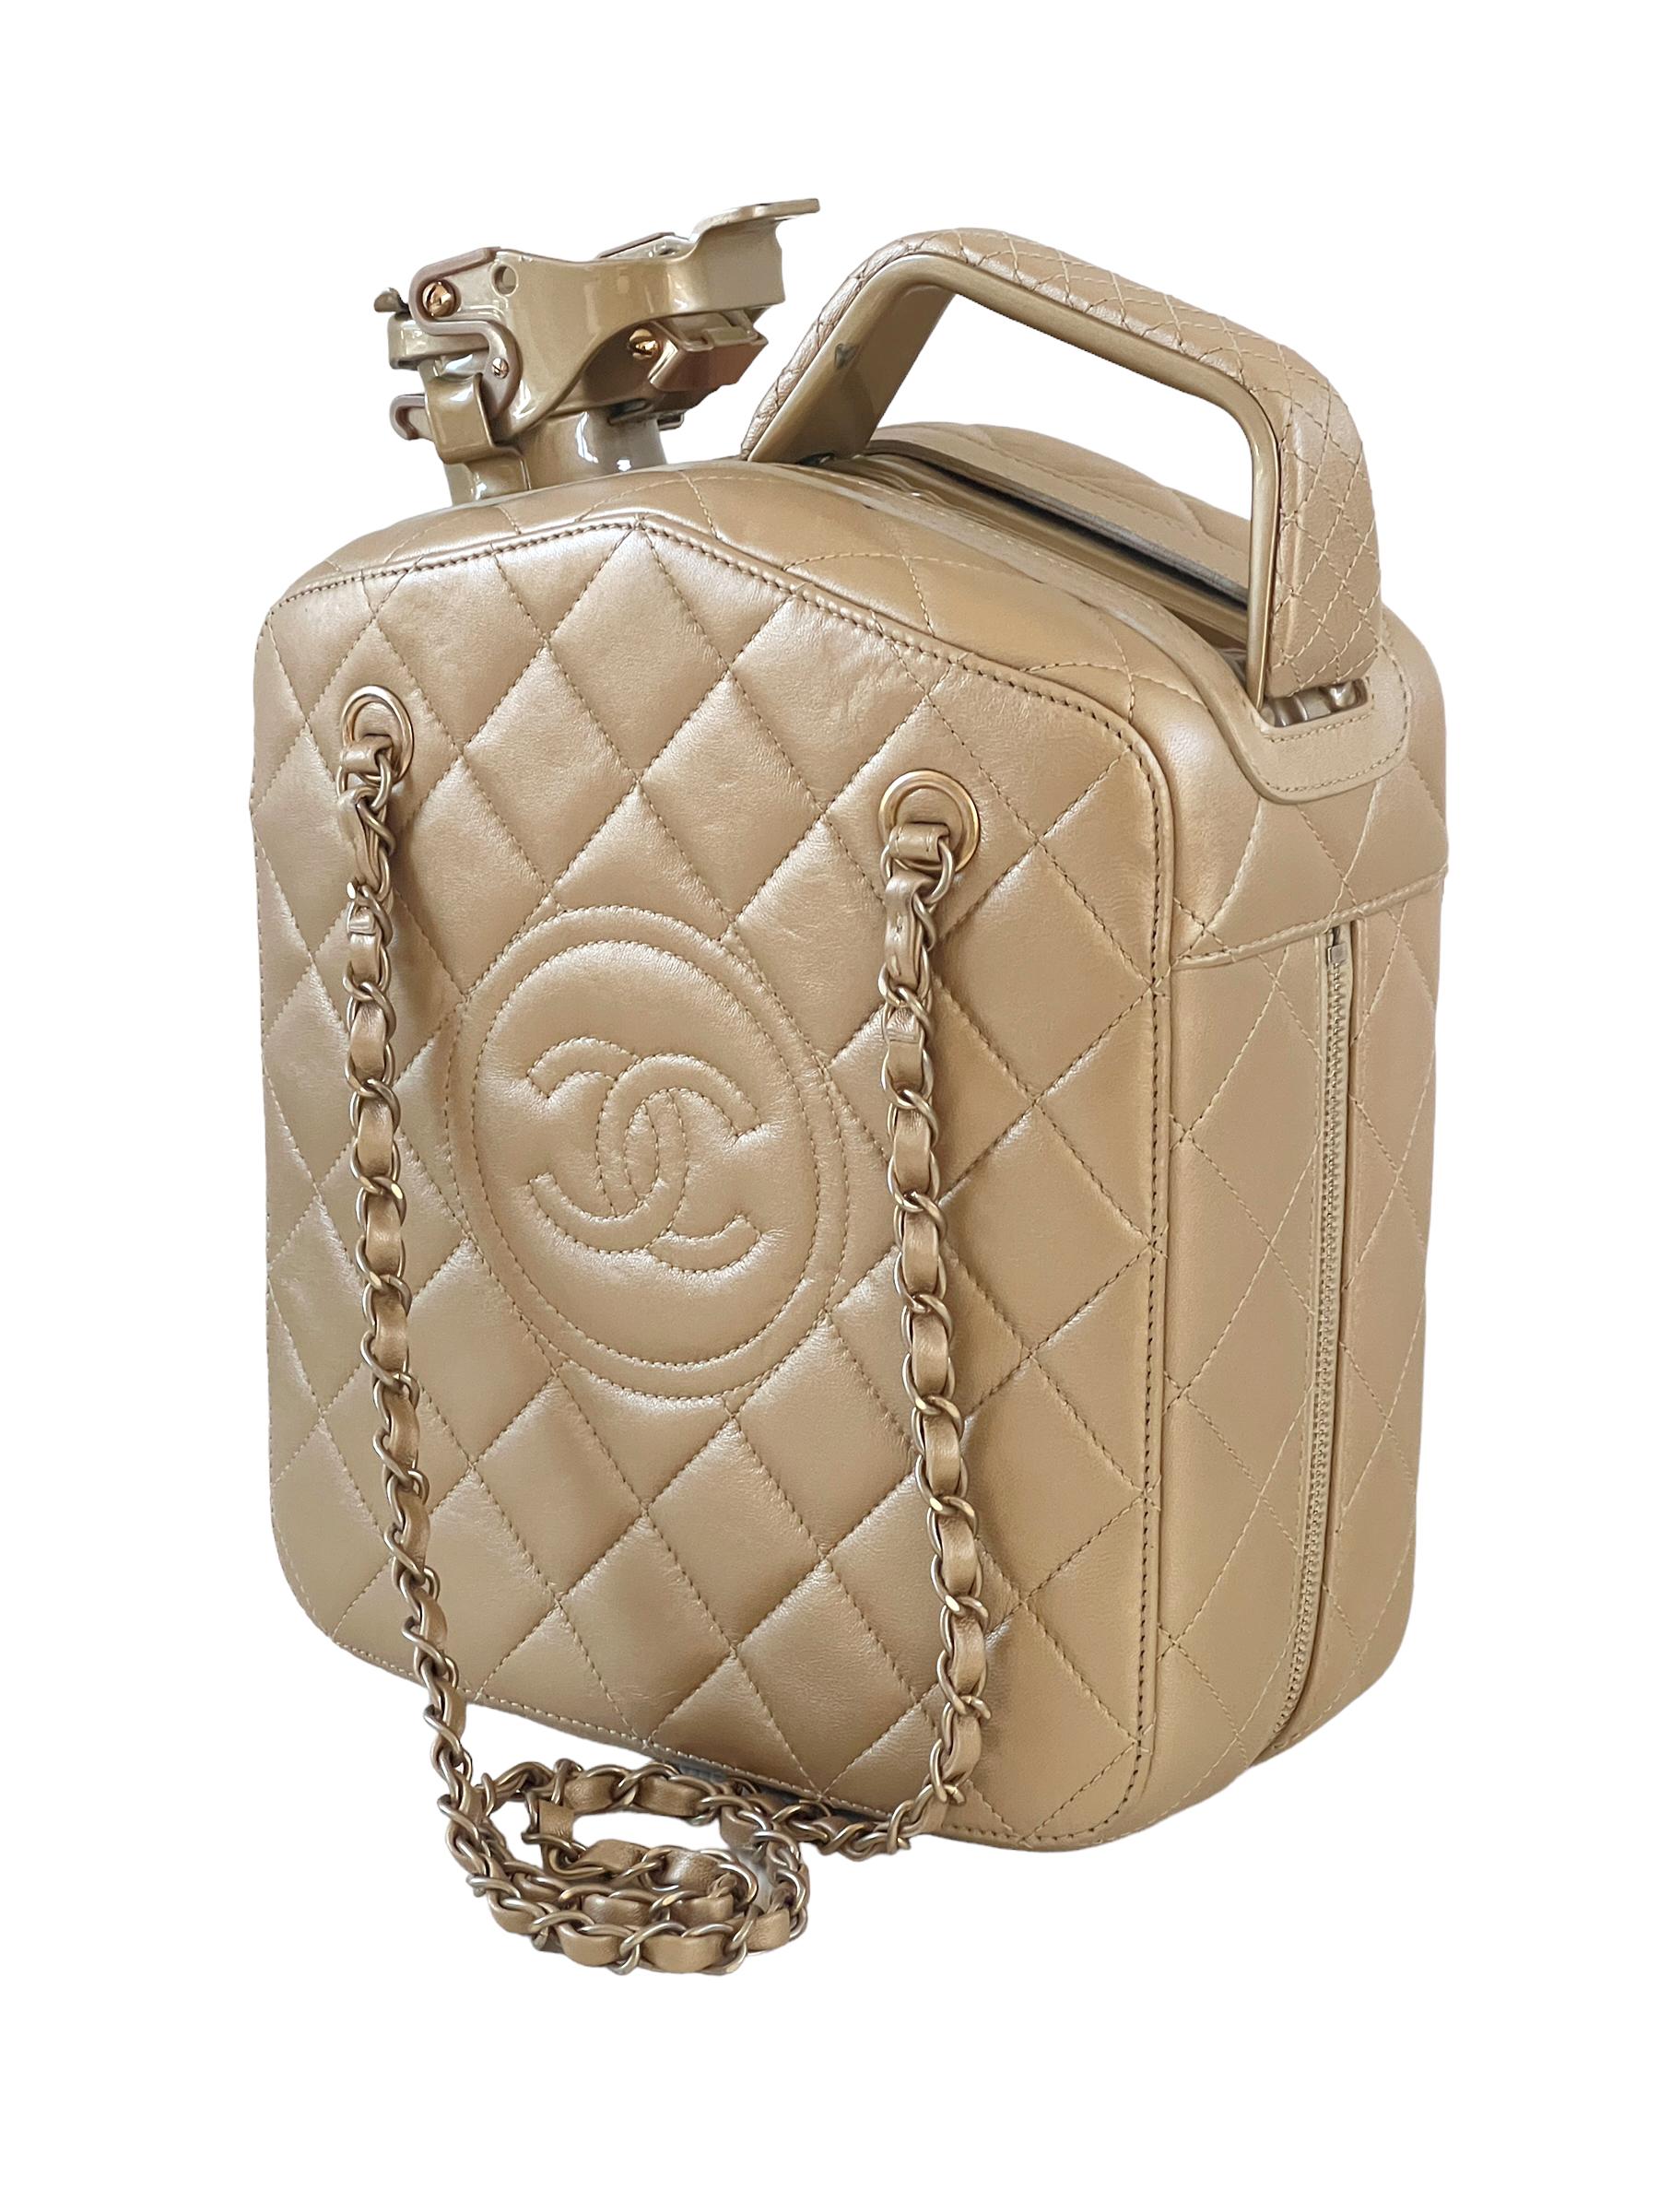 Chanel 2015 Paris-Dubai Nächte Gas Tank Jerry Can Accessoire Tasche

Seltene Sammlertasche in sehr gutem Zustand / Entworfen von Karl Lagerfeld

In sehr gutem Zustand mit leichten Gebrauchsspuren

Höhe: 10